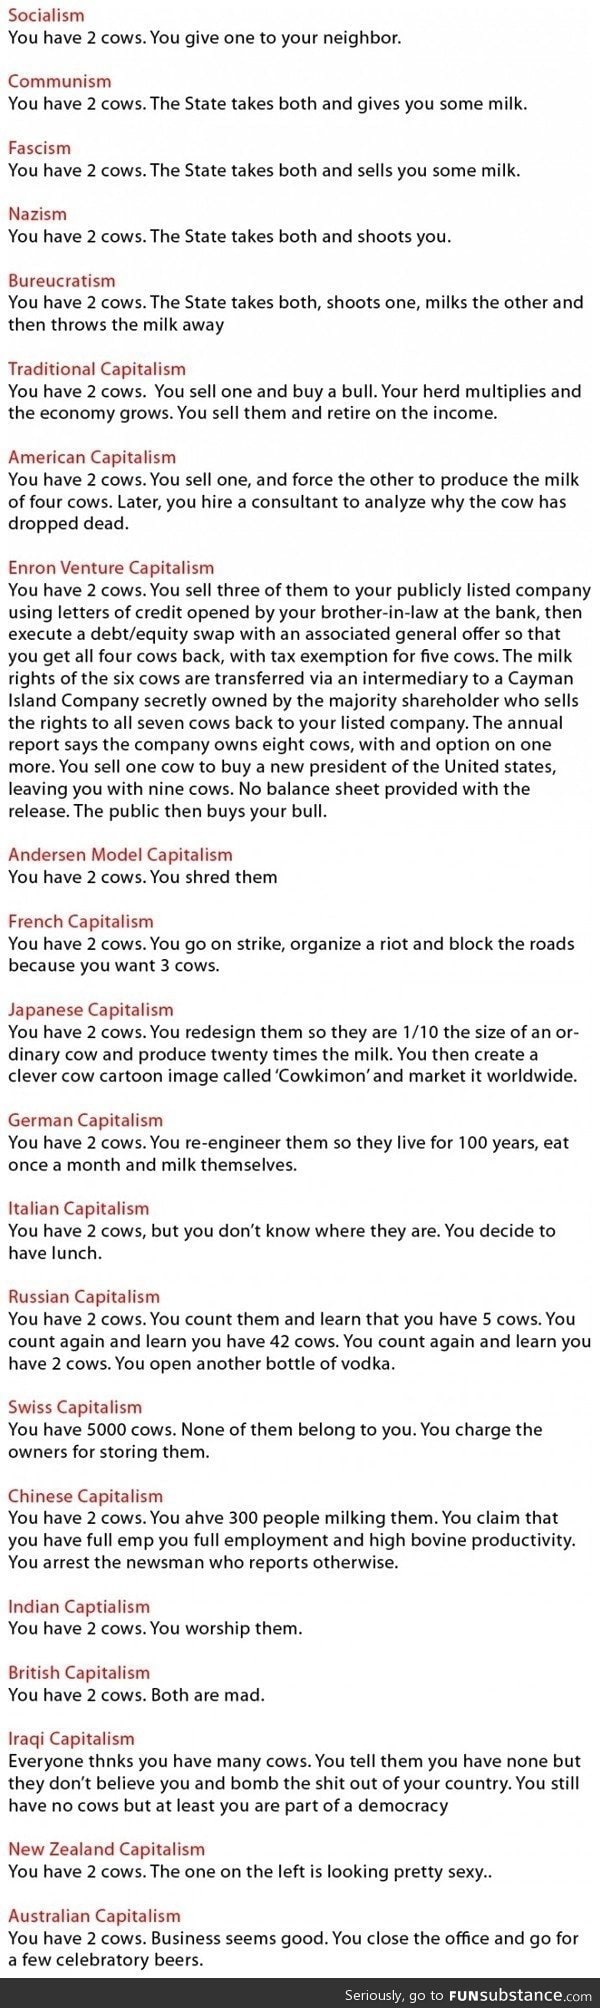 World economic model unit: Cows